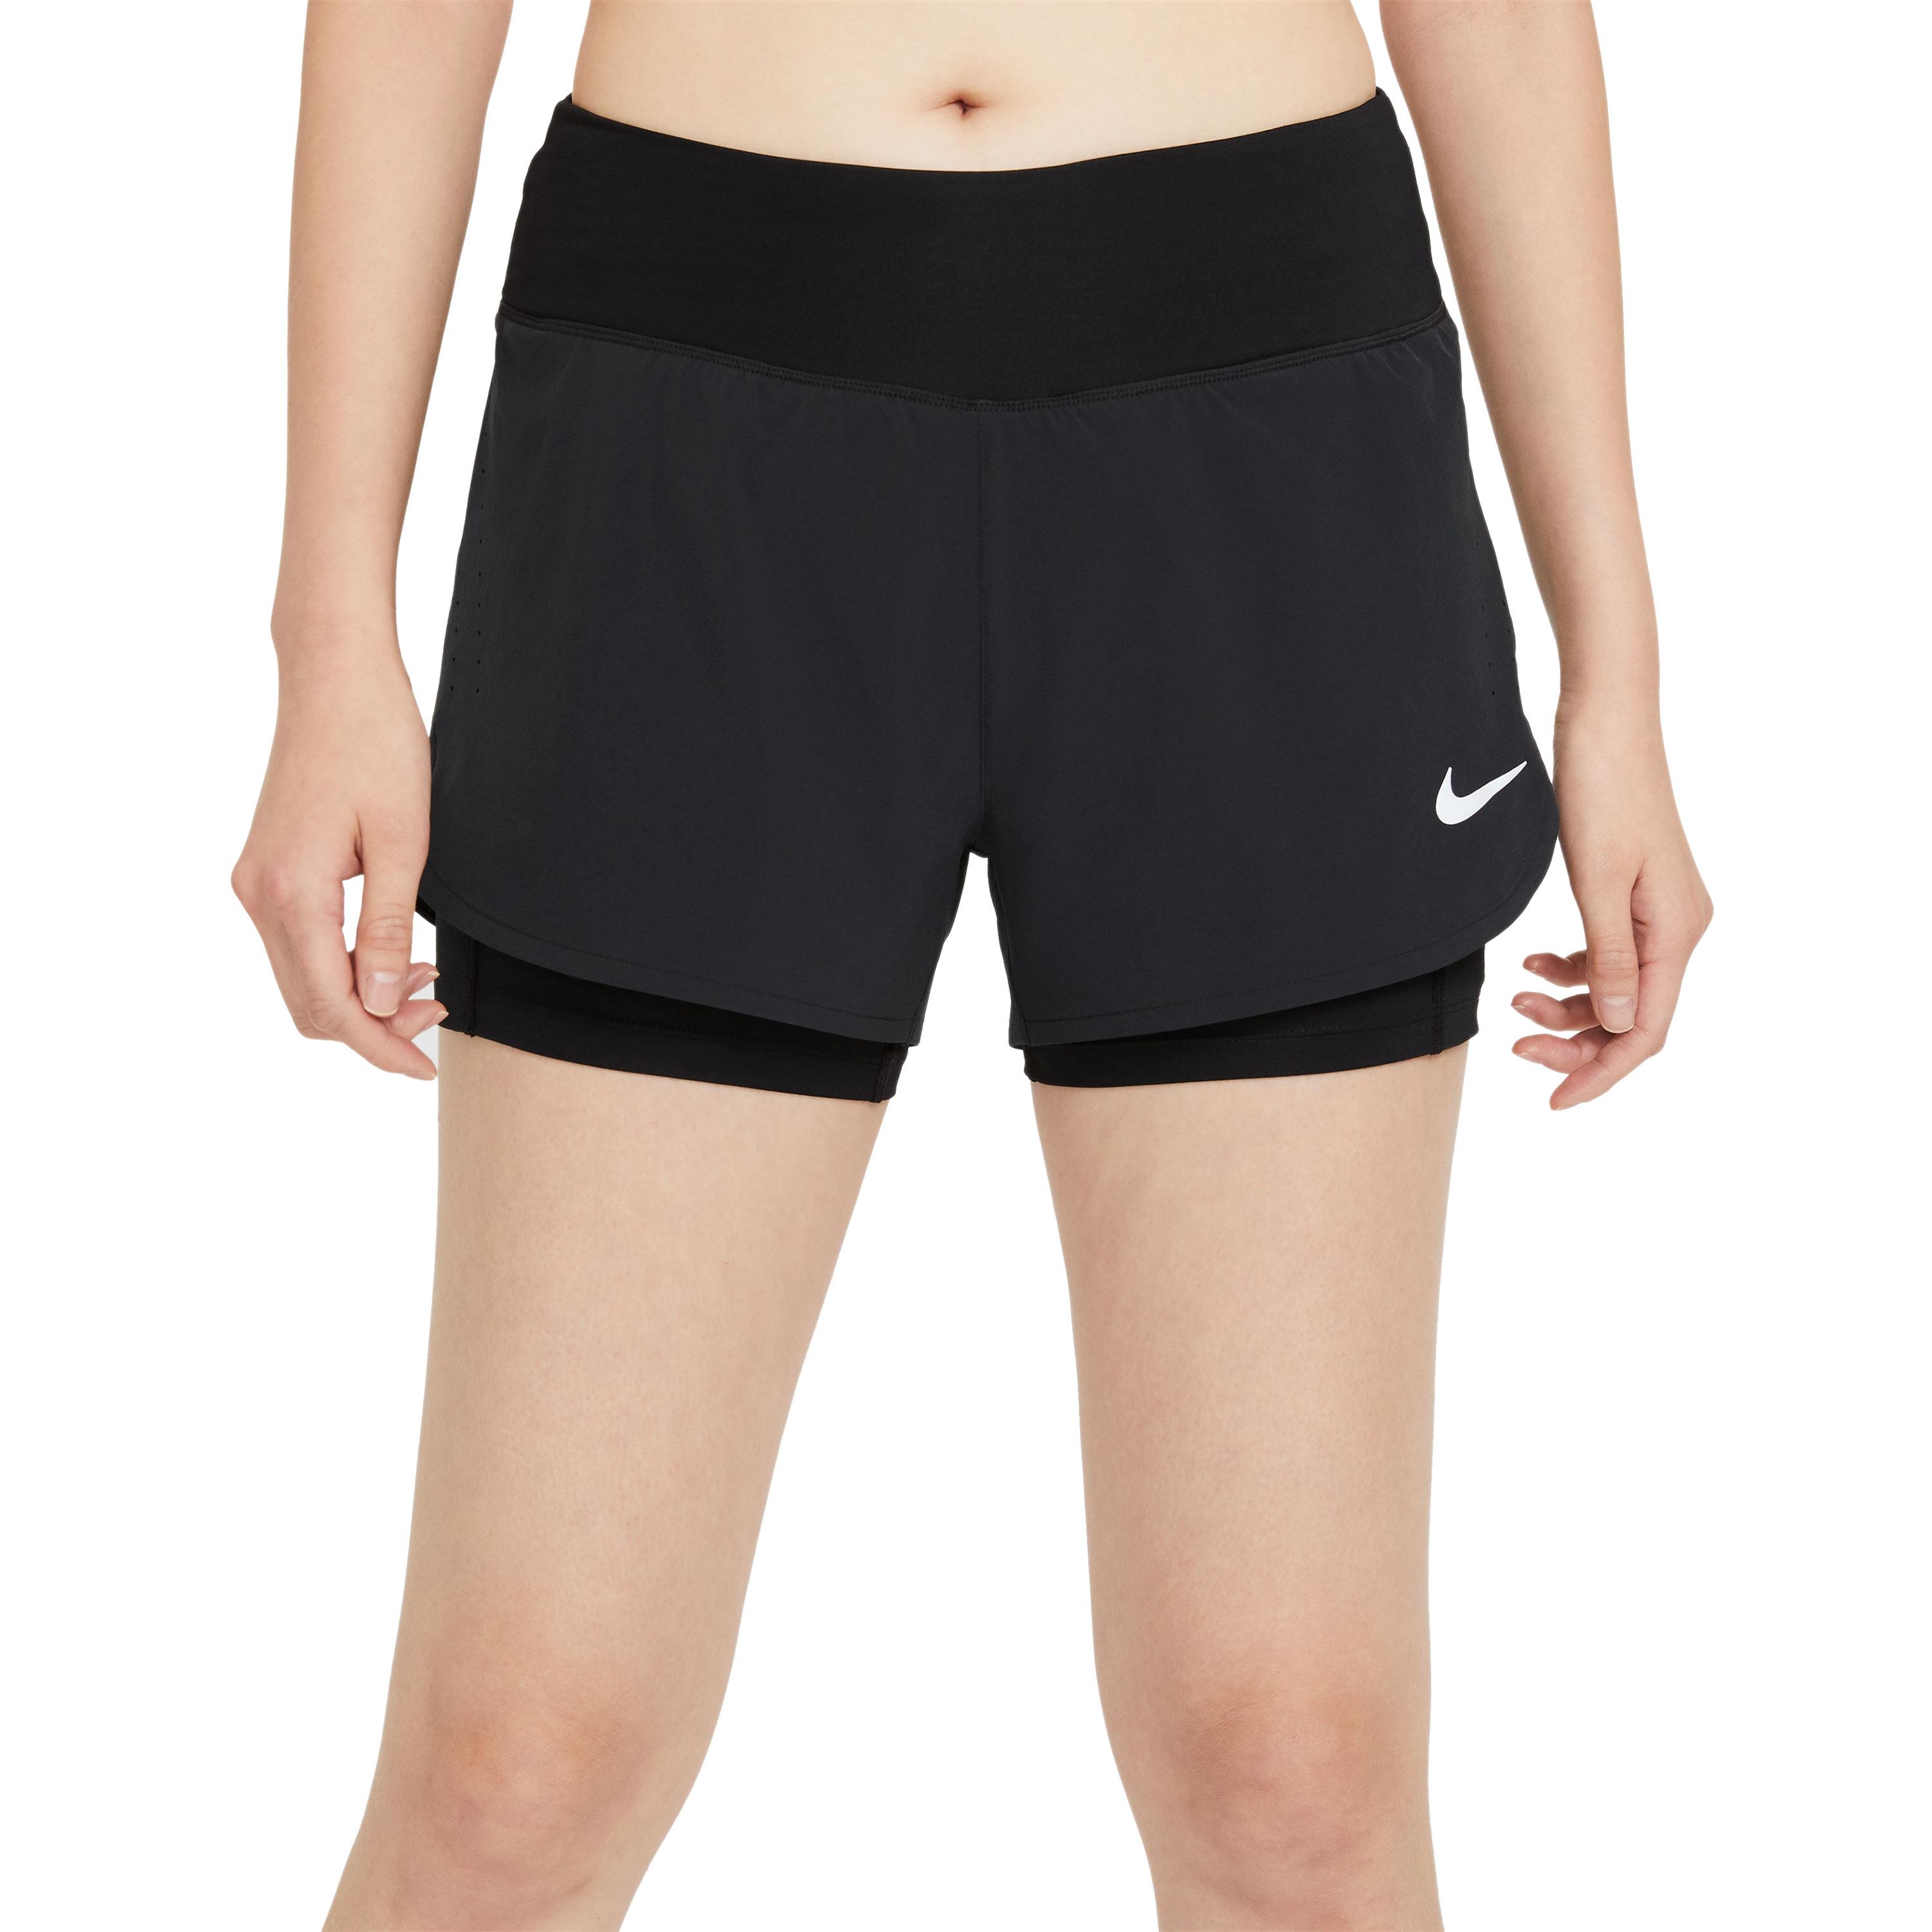 Onverenigbaar Duidelijk maken weerstand Nike Eclipse hardloopbroek dames zwart